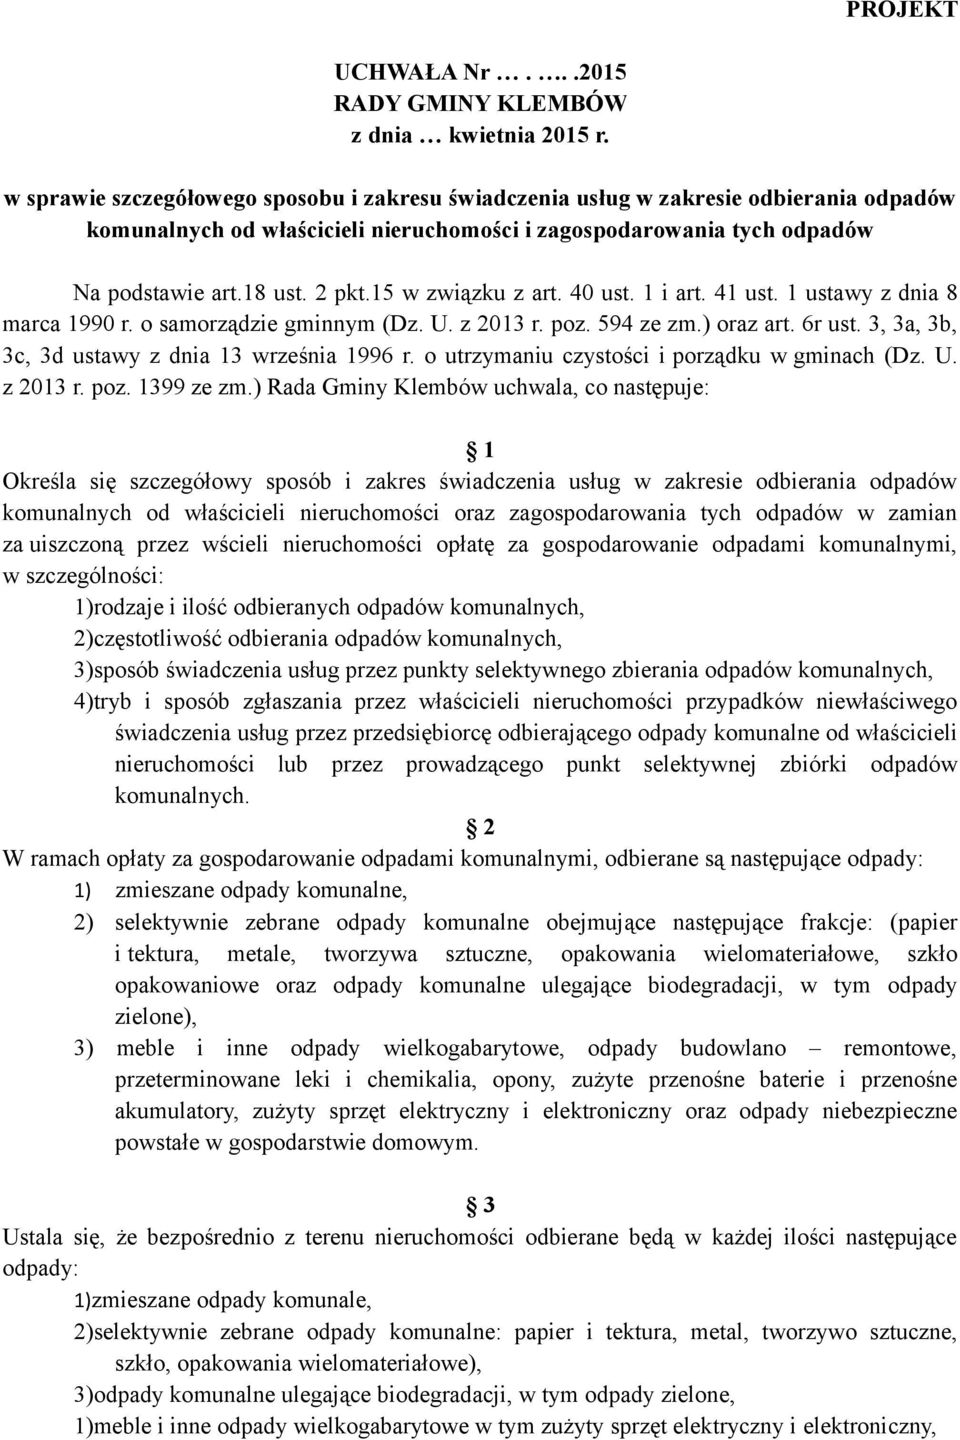 15 w związku z art. 40 ust. 1 i art. 41 ust. 1 ustawy z dnia 8 marca 1990 r. o samorządzie gminnym (Dz. U. z 2013 r. poz. 594 ze zm.) oraz art. 6r ust.